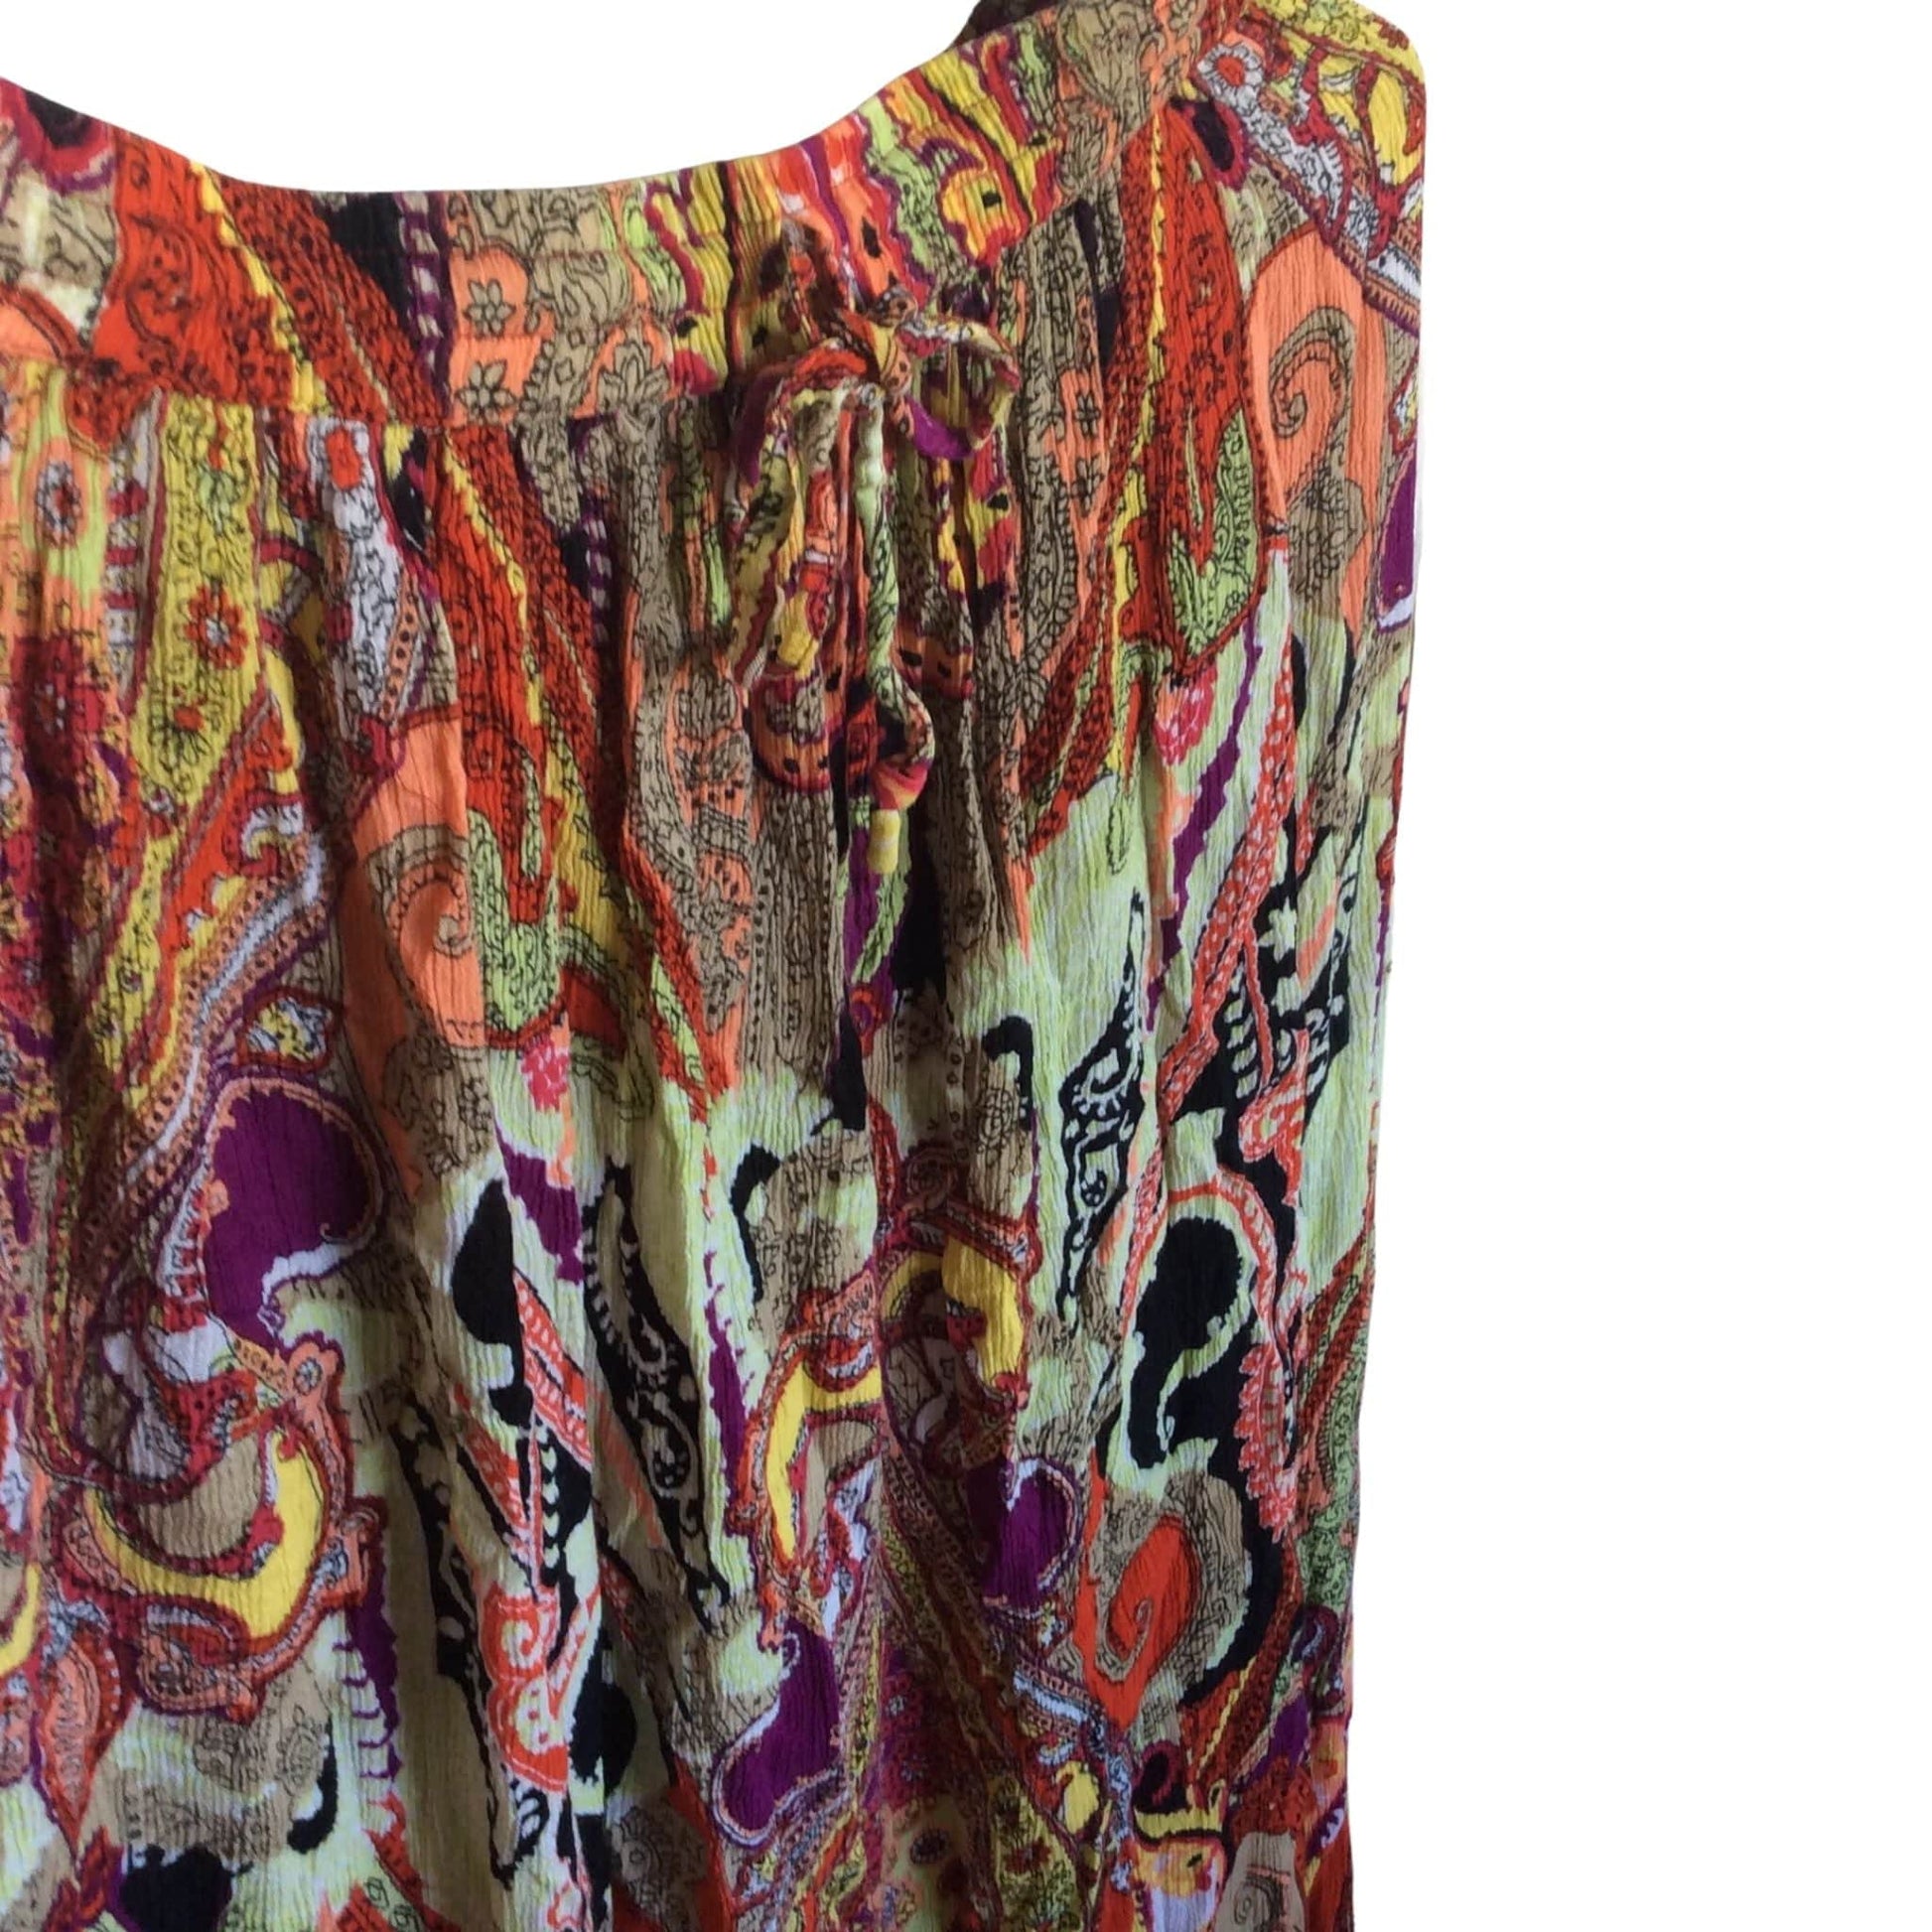 Vintage Bohemian Skirt Medium / Multi / Vintage 1970s